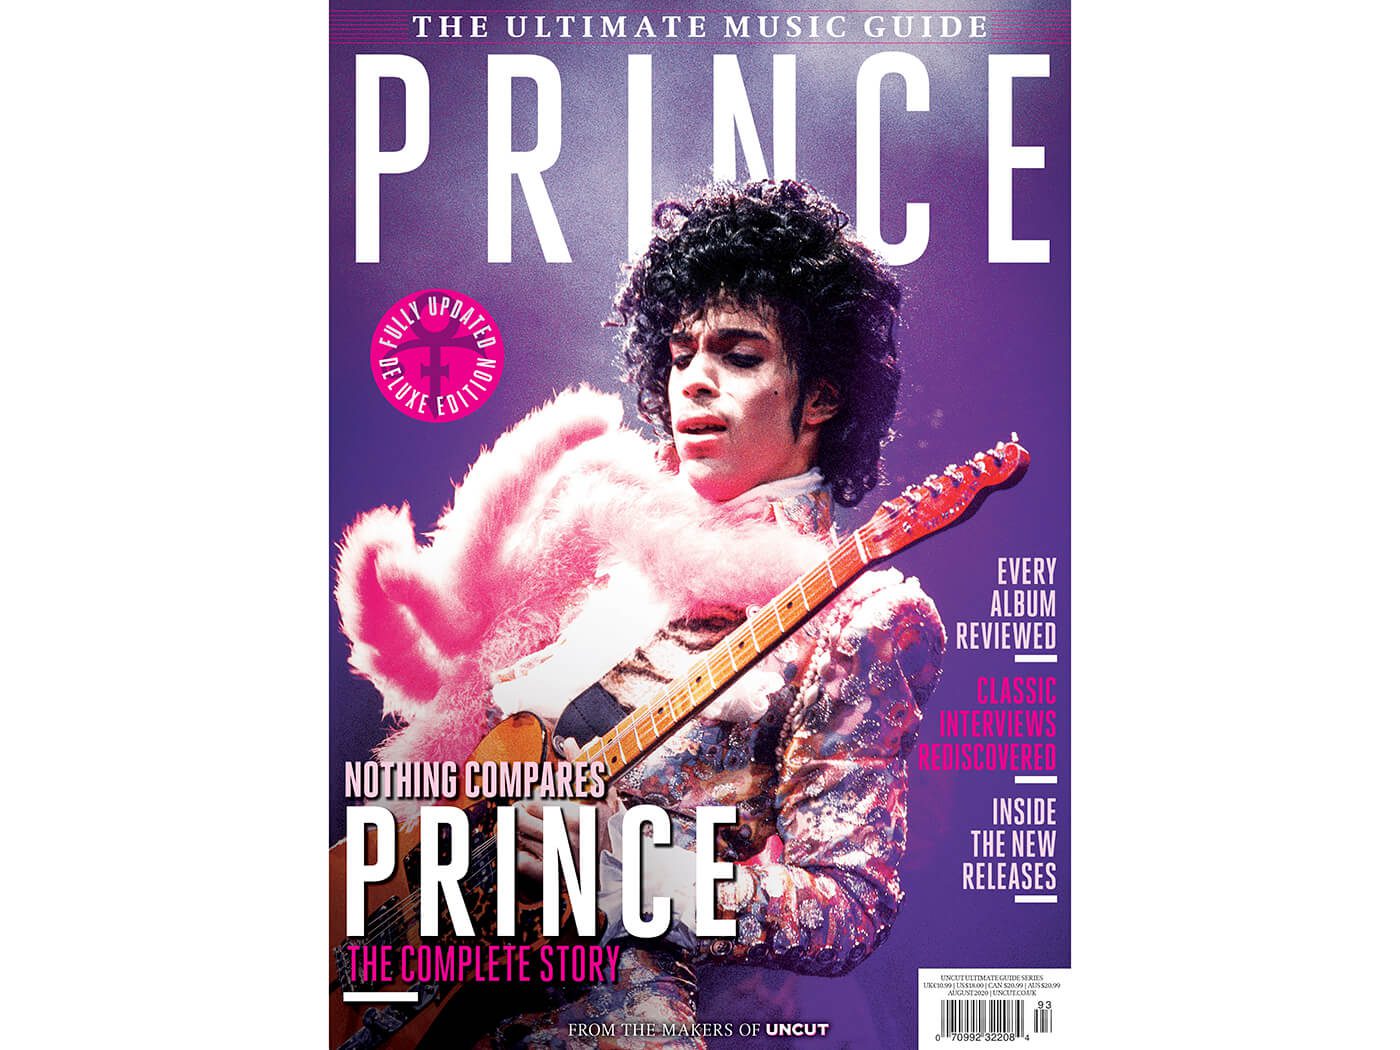 Prince – Sign O’ The Times